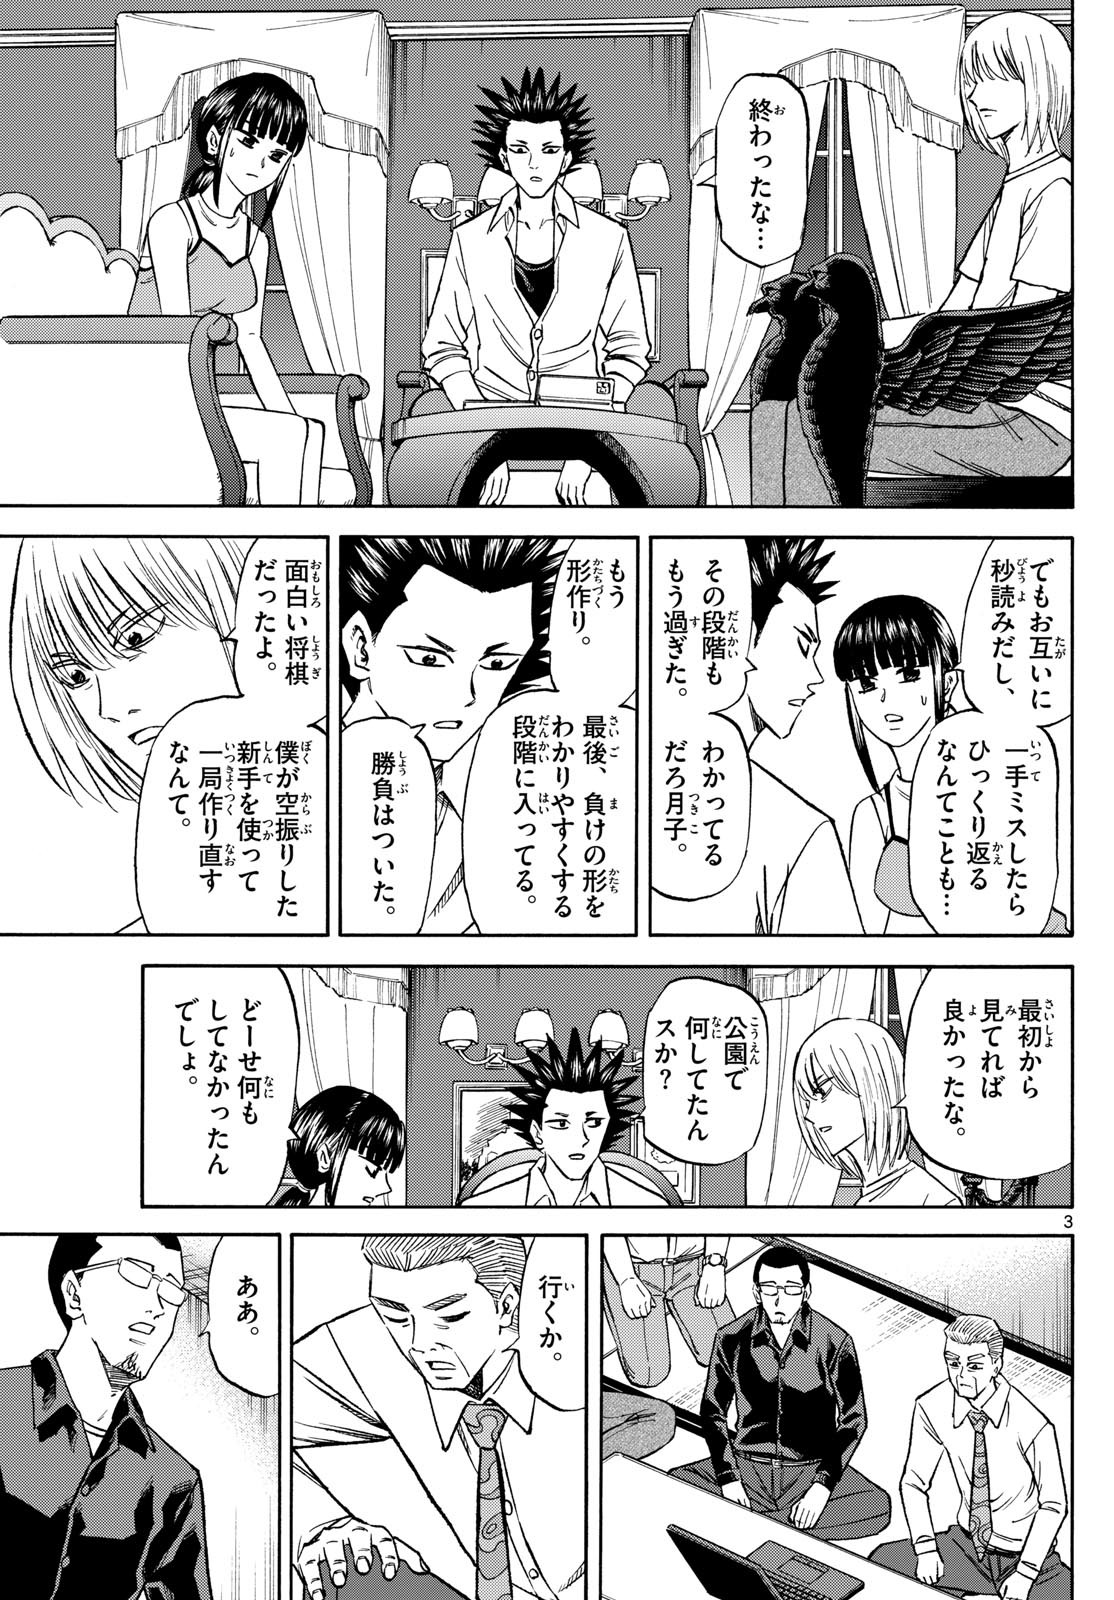 Ryu-to-Ichigo - Chapter 145 - Page 3